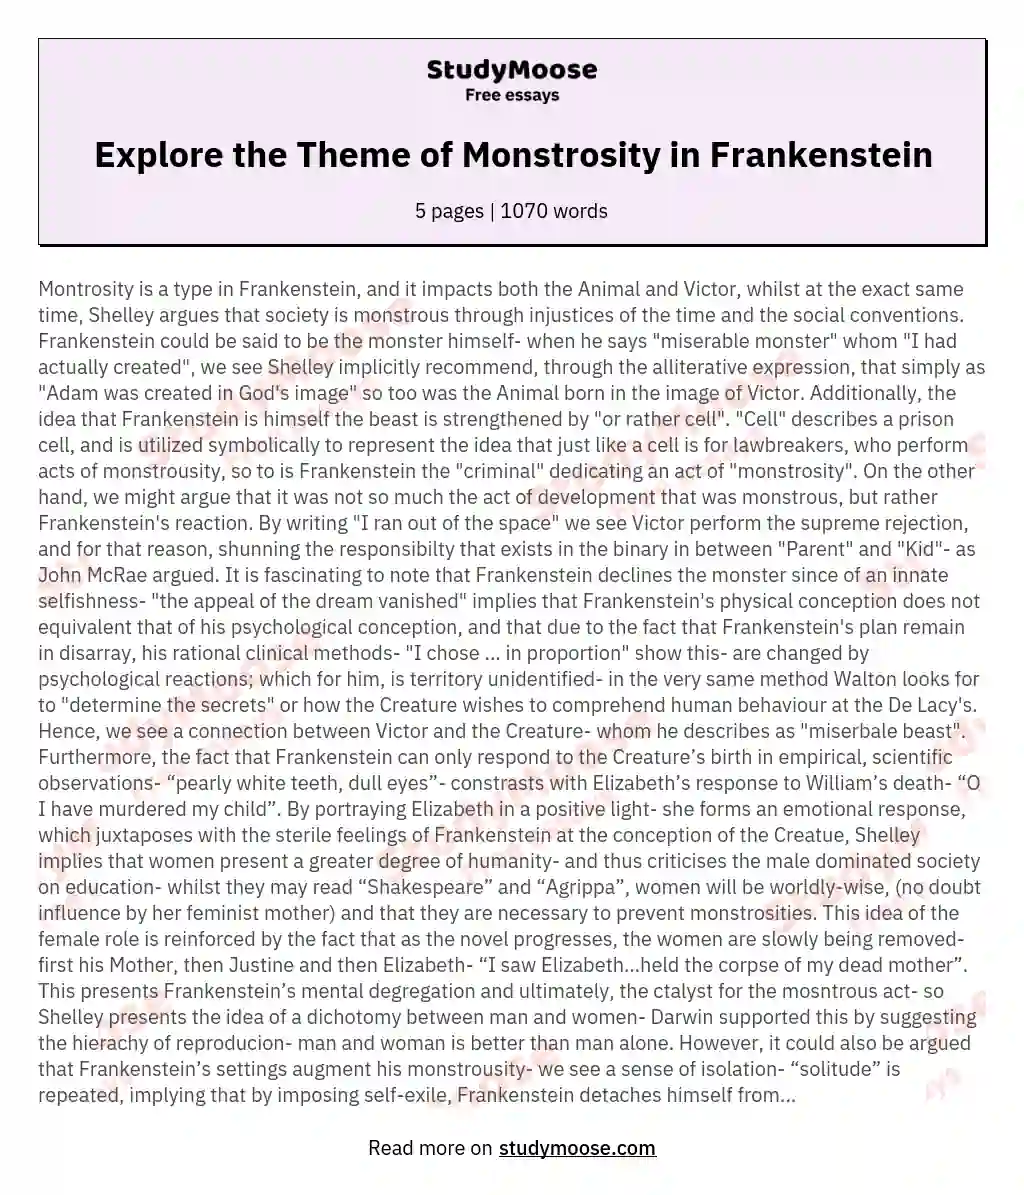 Explore the Theme of Monstrosity in Frankenstein essay